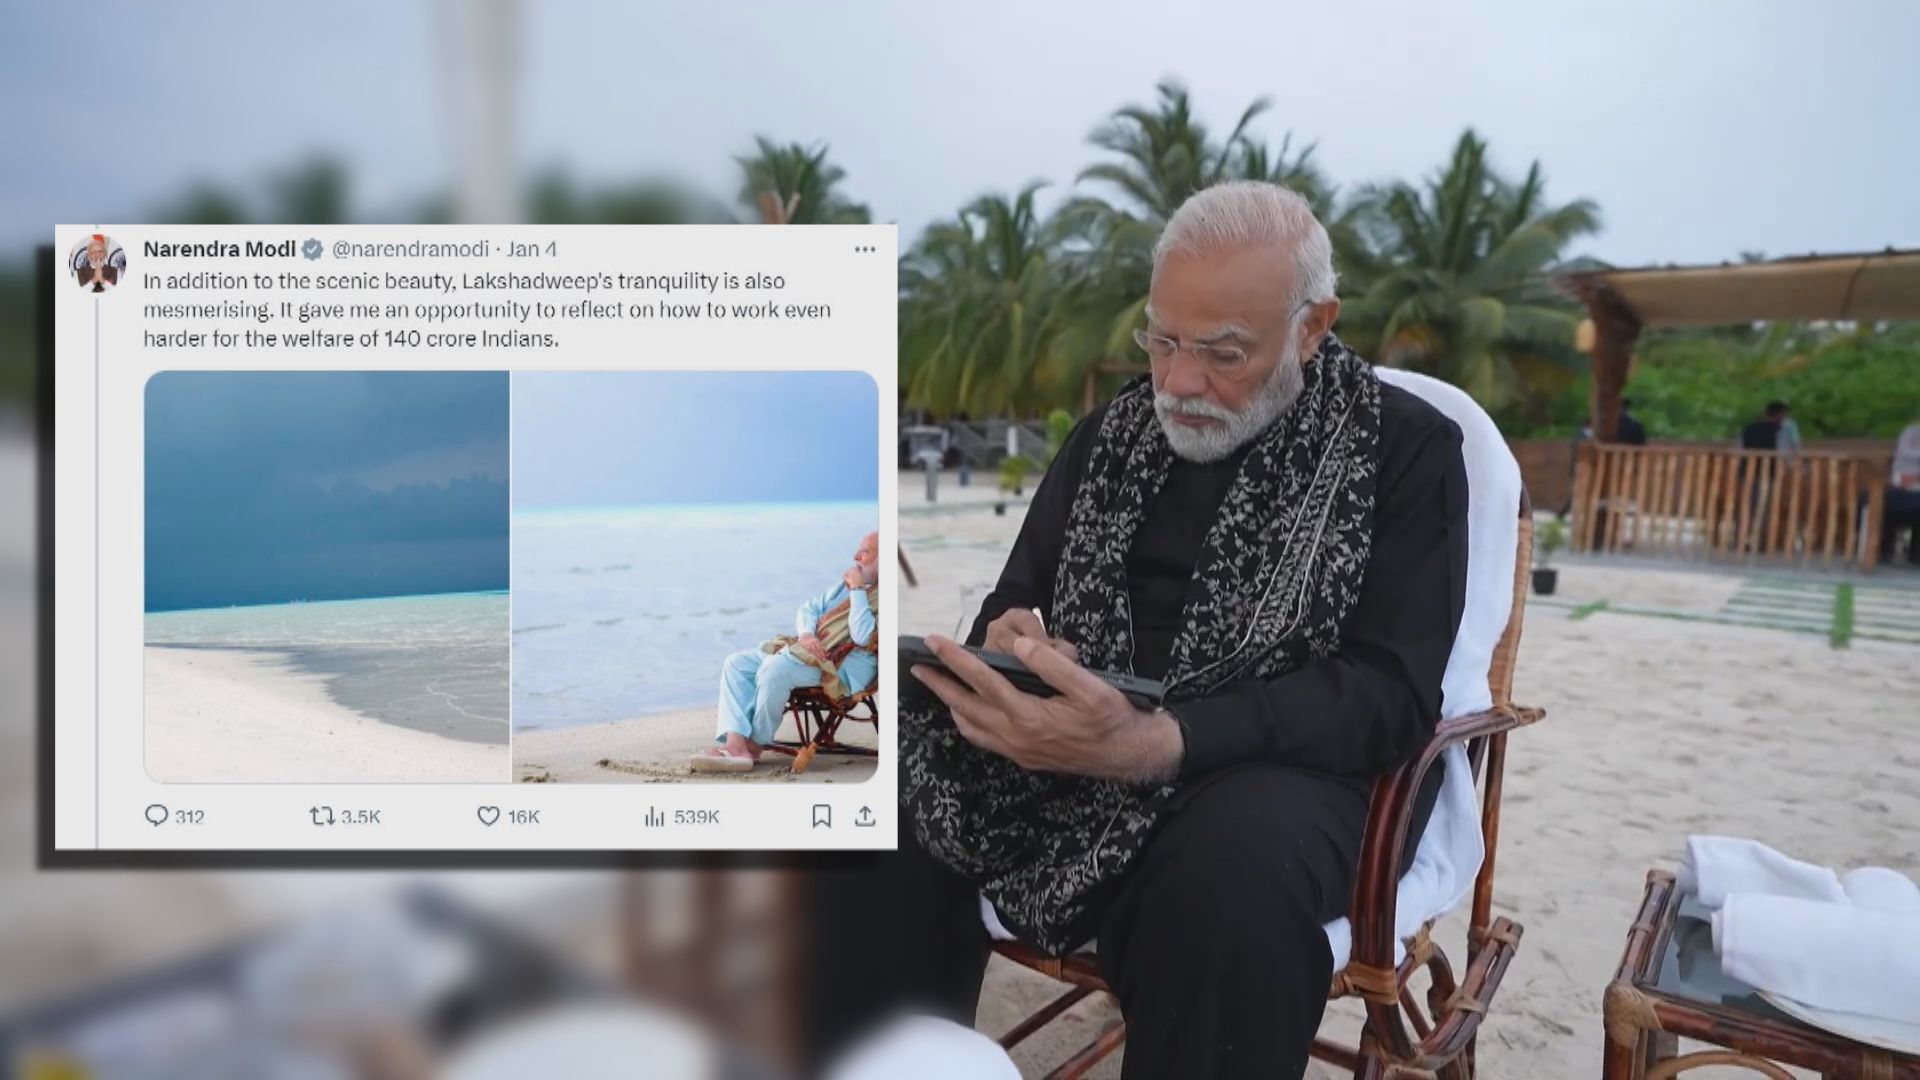 印度總理莫迪發帖文讚印度小島風光 惹馬爾代夫人不滿